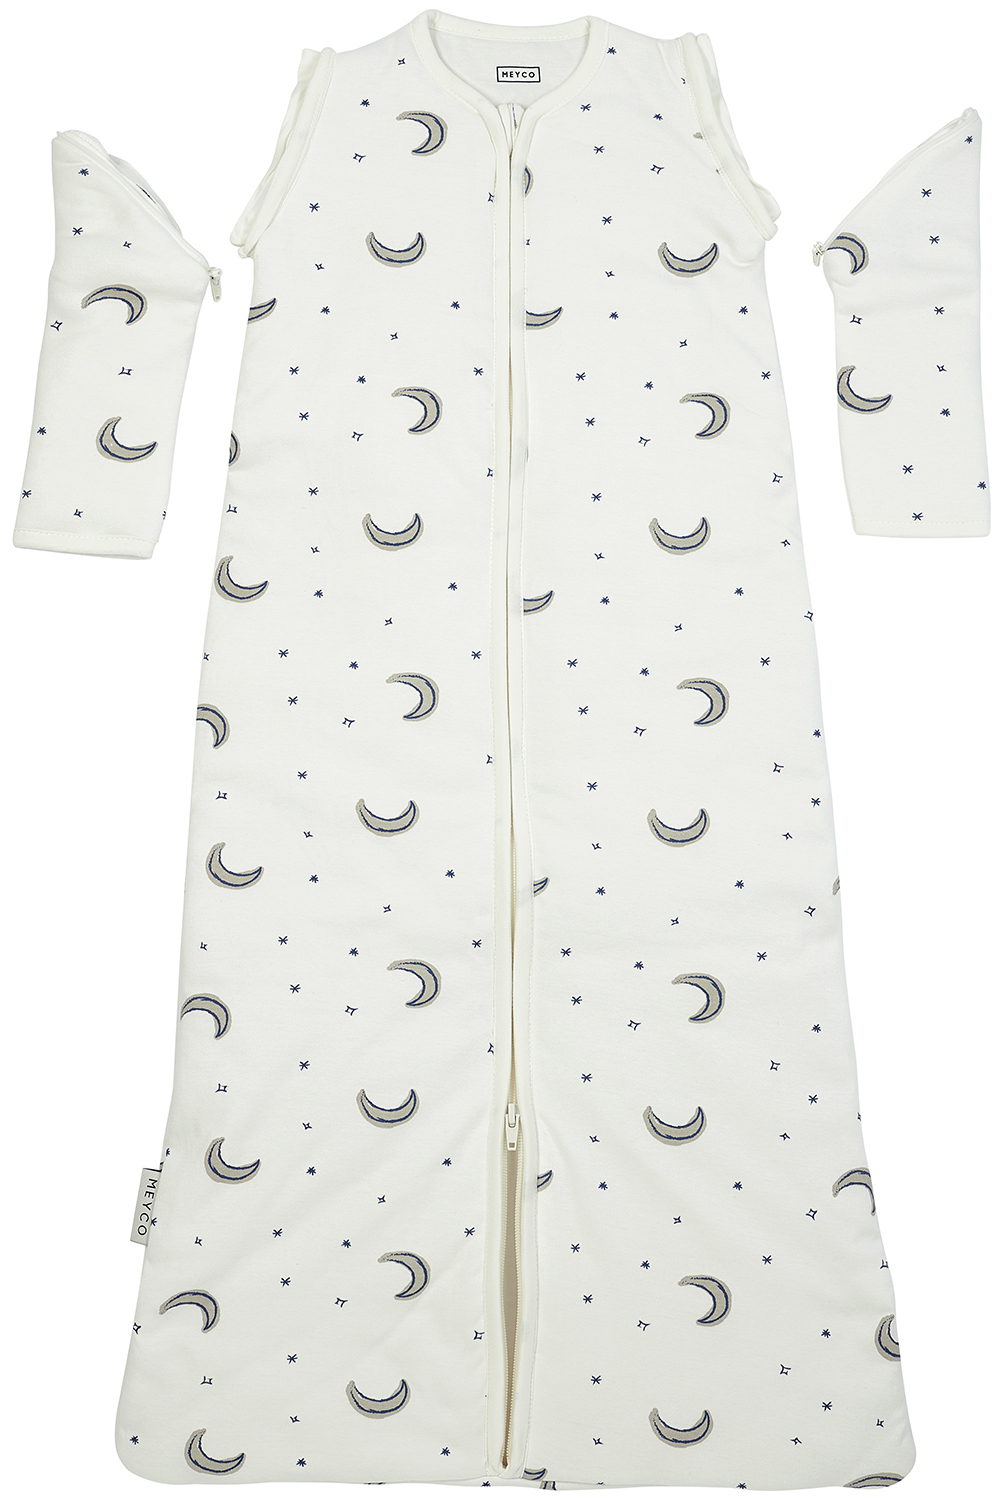 Babyschlafsack mit abnehmbaren Ärmeln Moon - indigo - 70cm